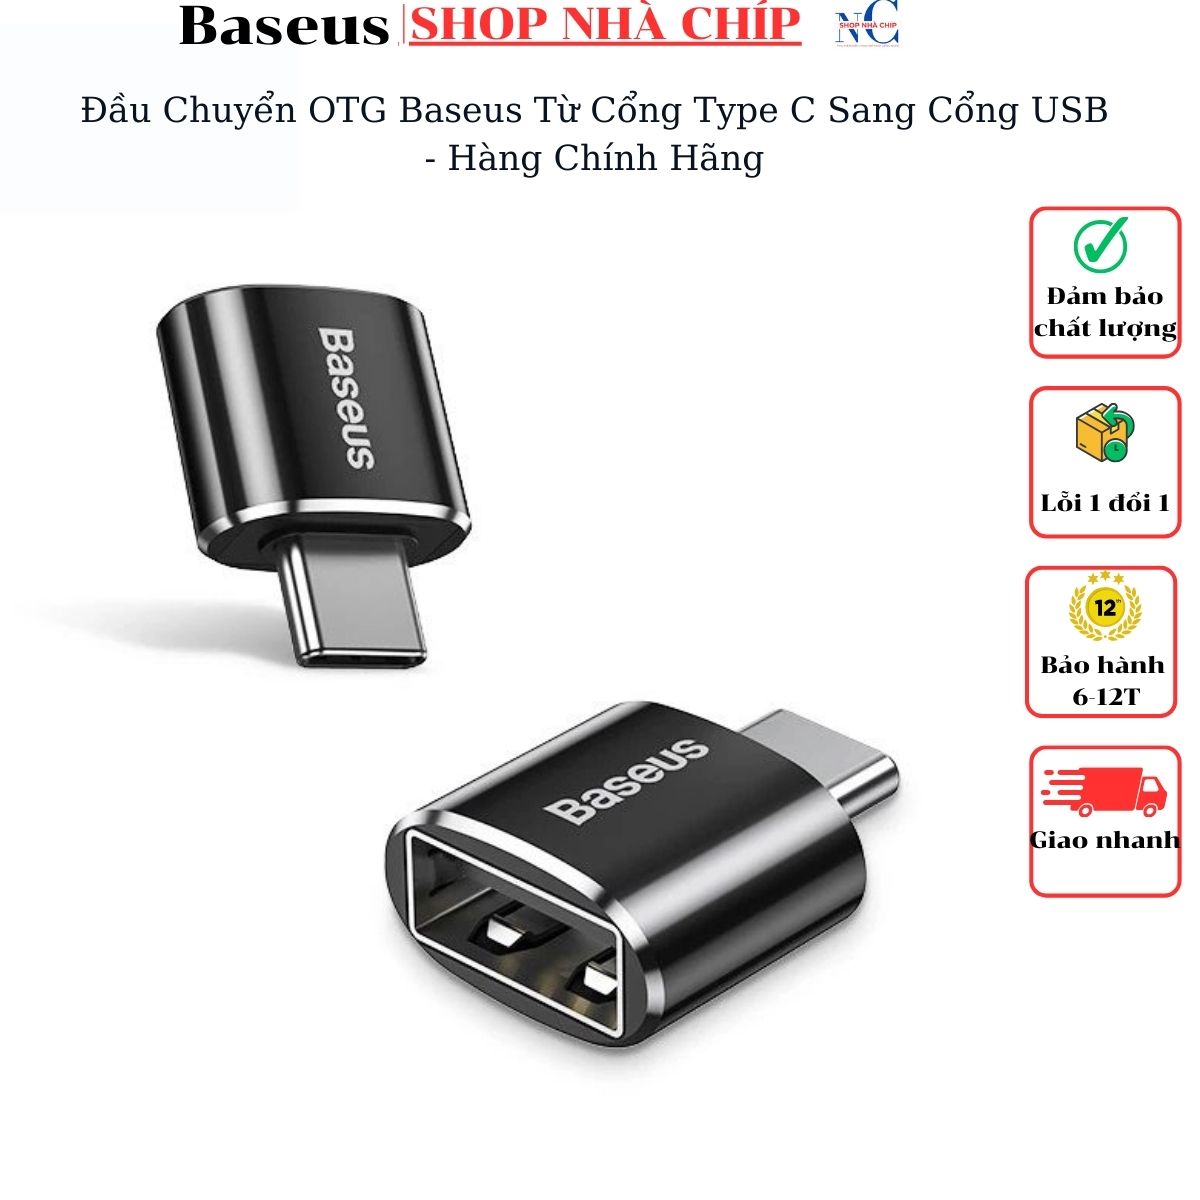 Đầu Chuyển OTG Baseus Từ Cổng Type C Sang Cổng USB - Hàng Chính Hãng